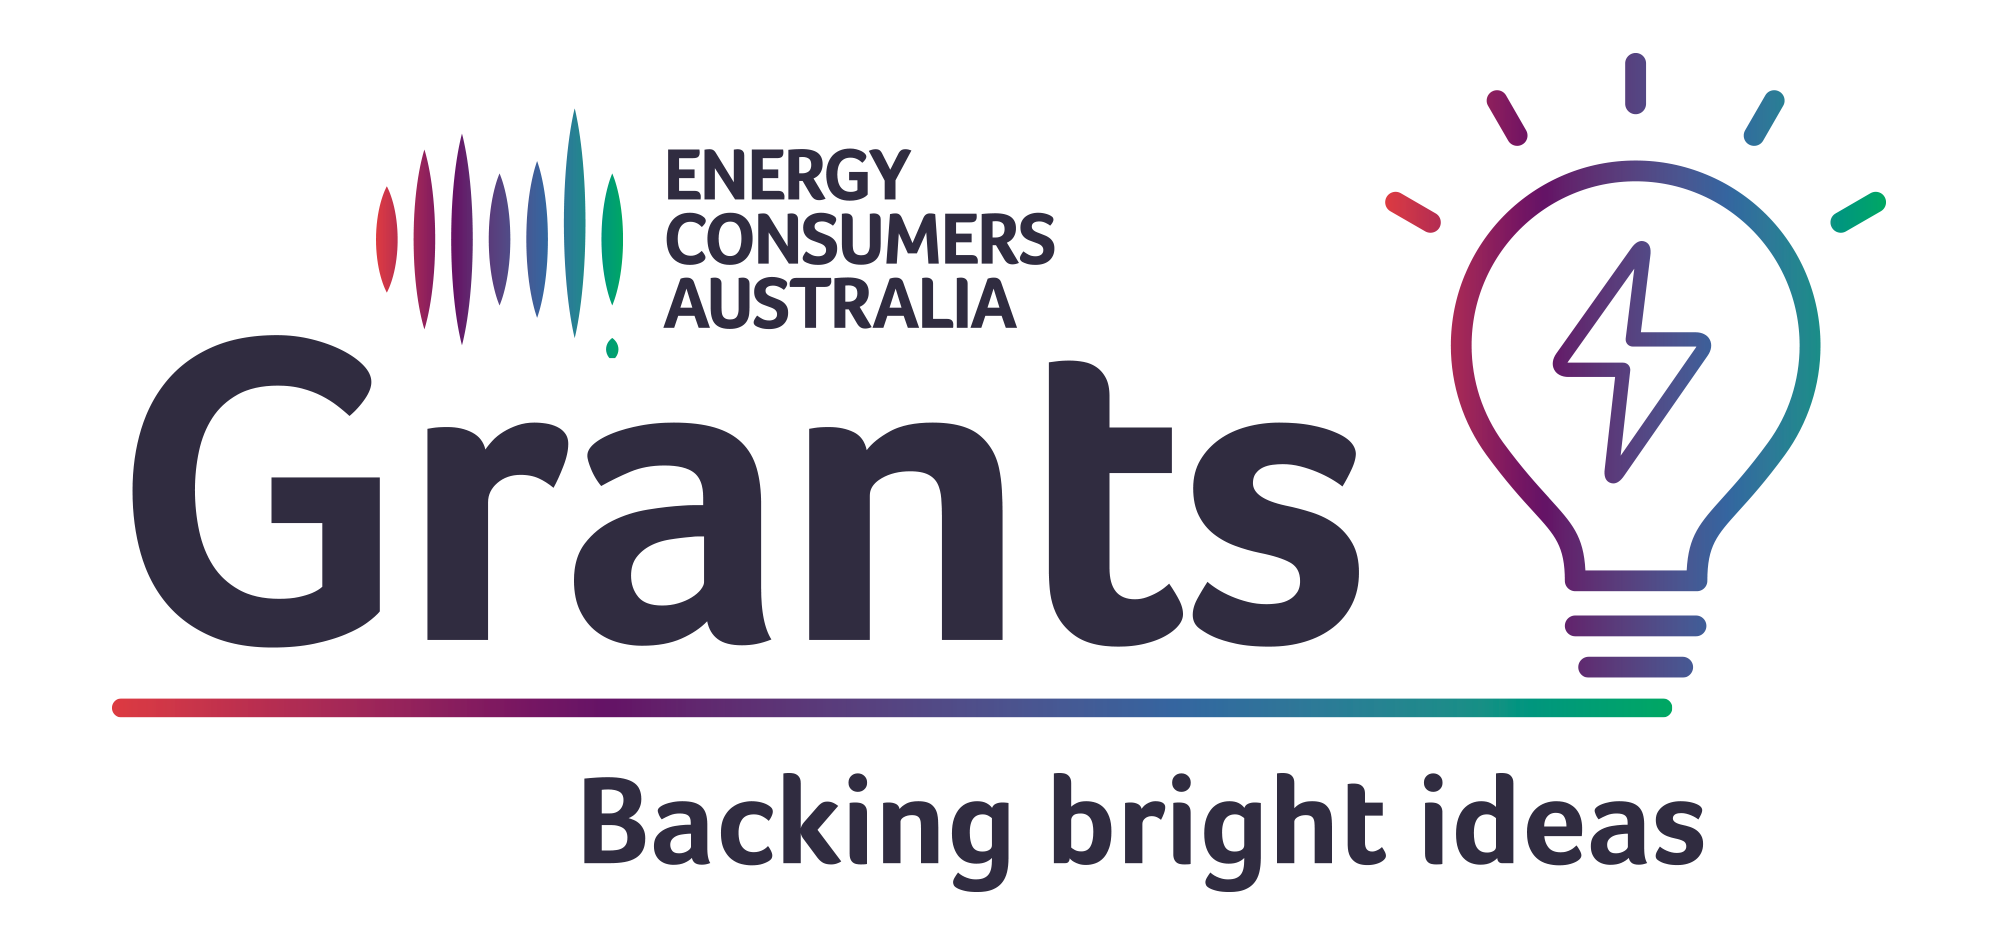 Energy Consumers Australia